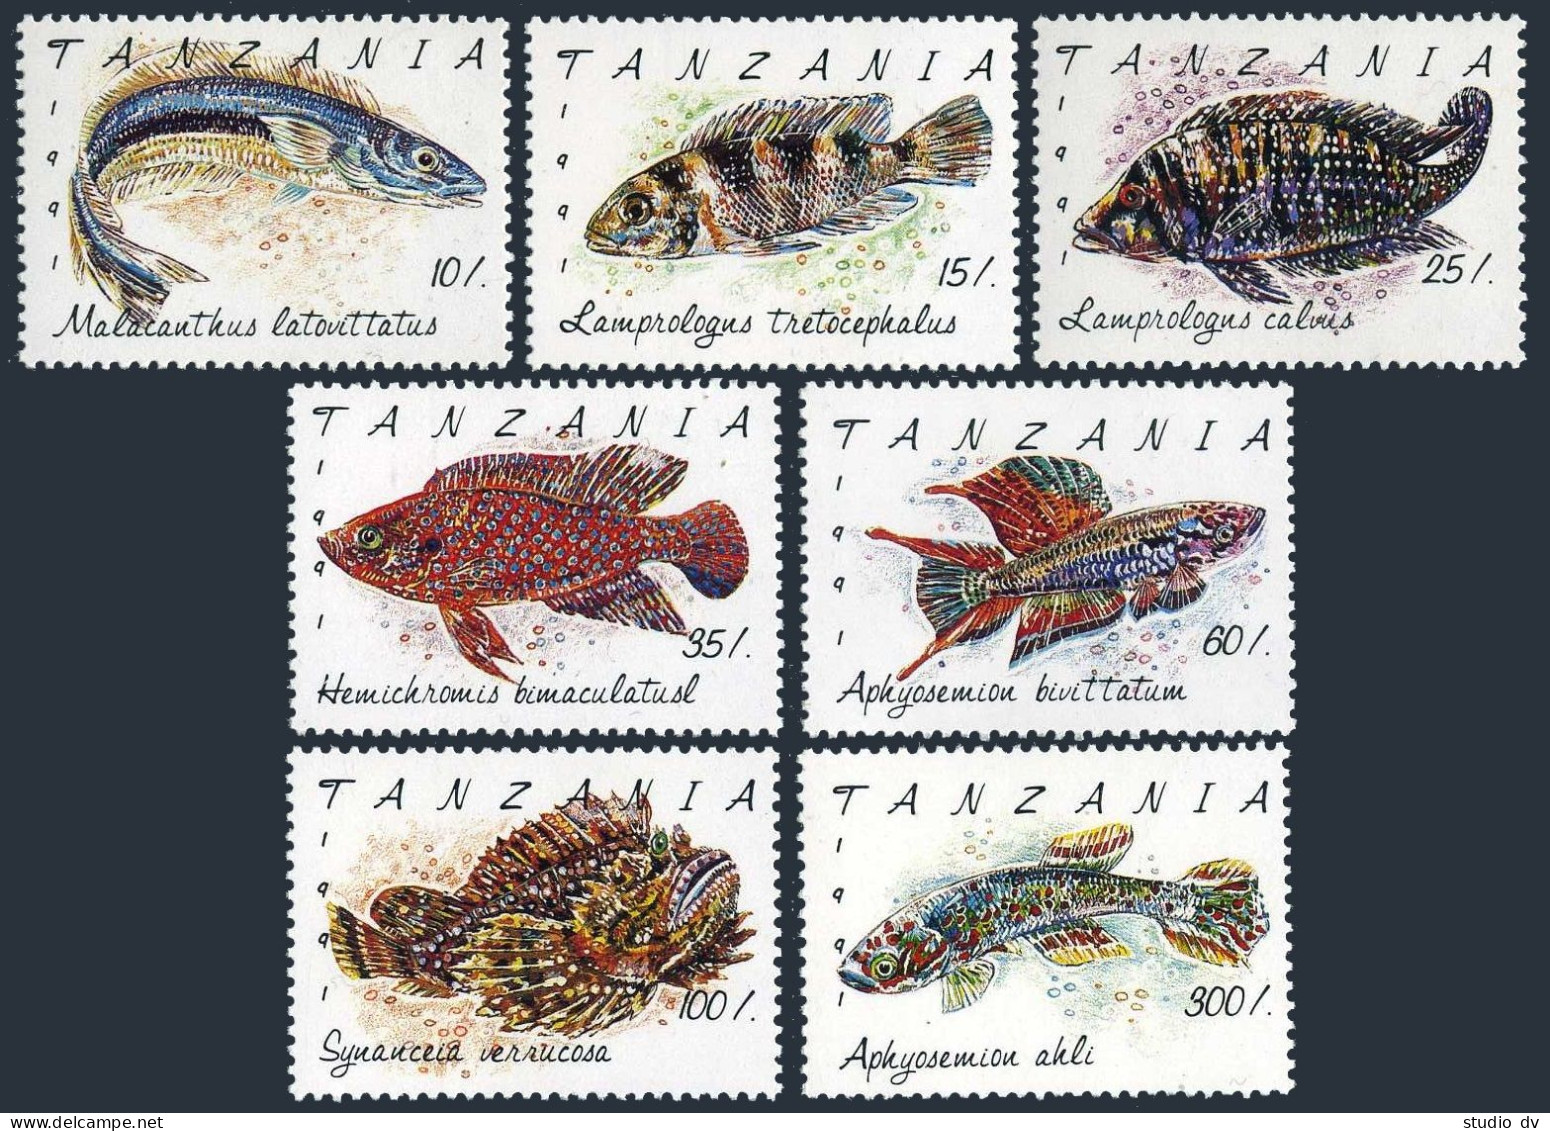 Tanzania 816-822,823,MNH.Michel 1040-1046,Bl.168. Fish 1992. - Tanzanie (1964-...)